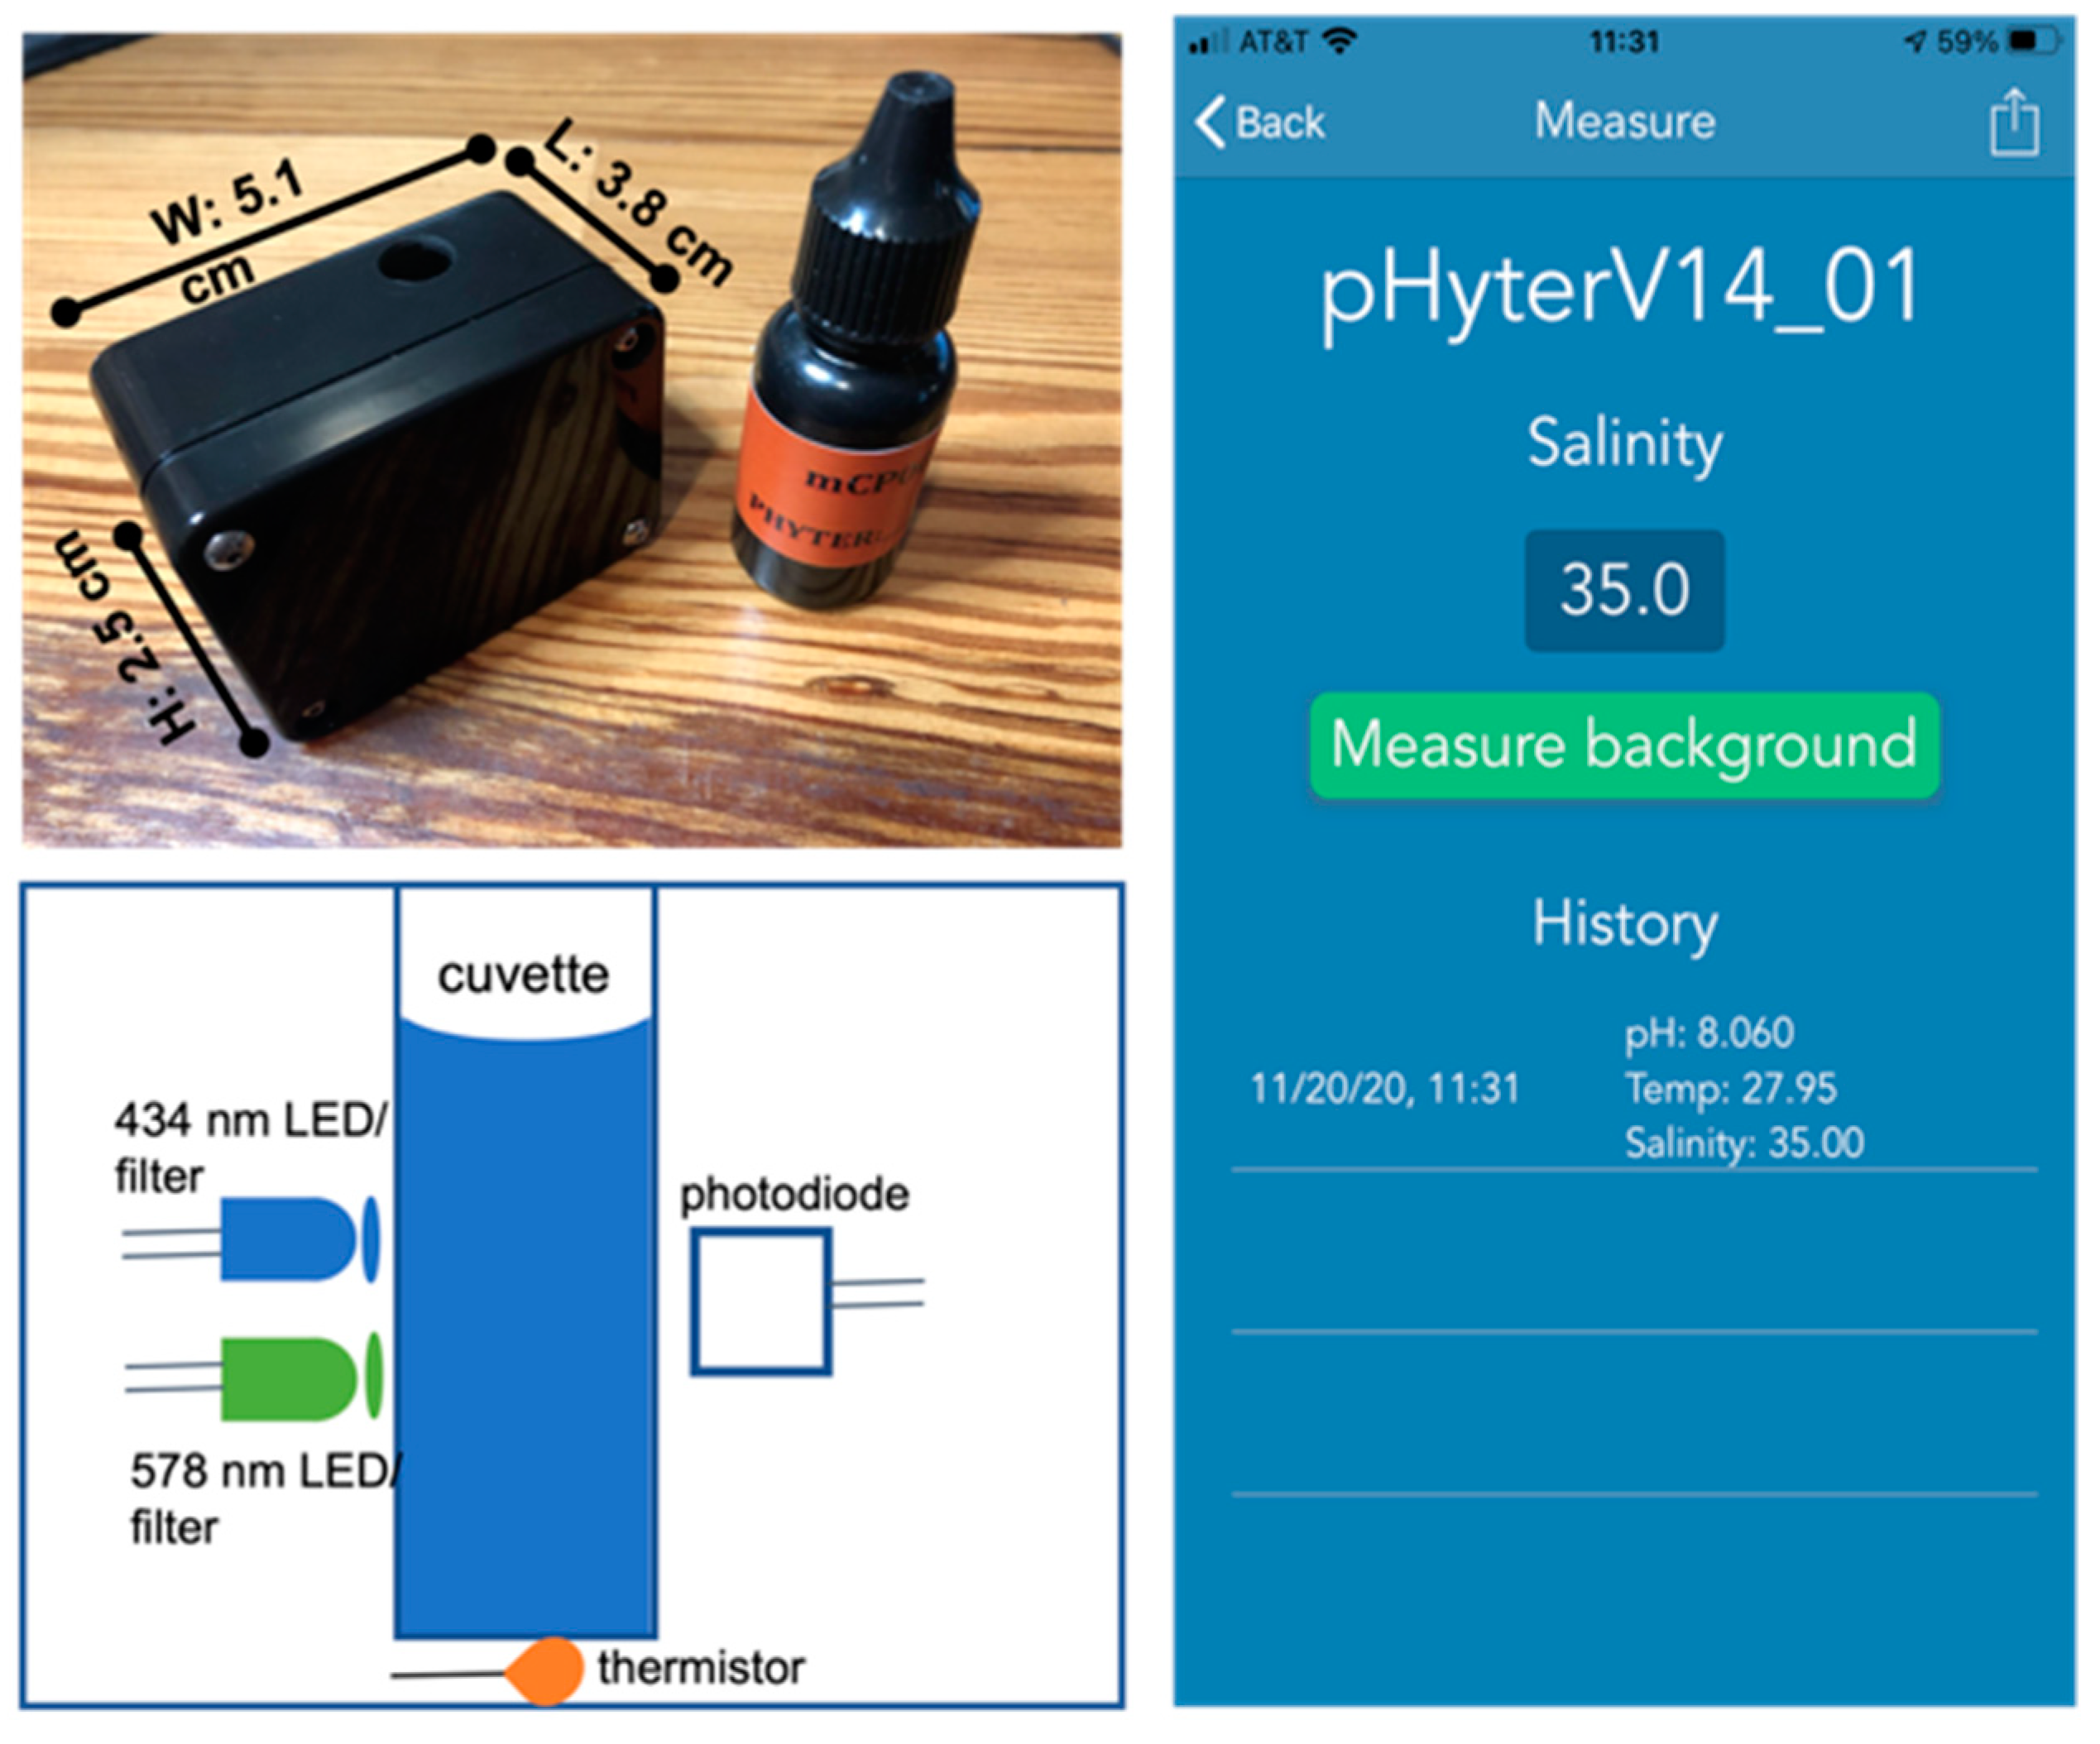 pHyter, a spectrophotometric pH analyzer